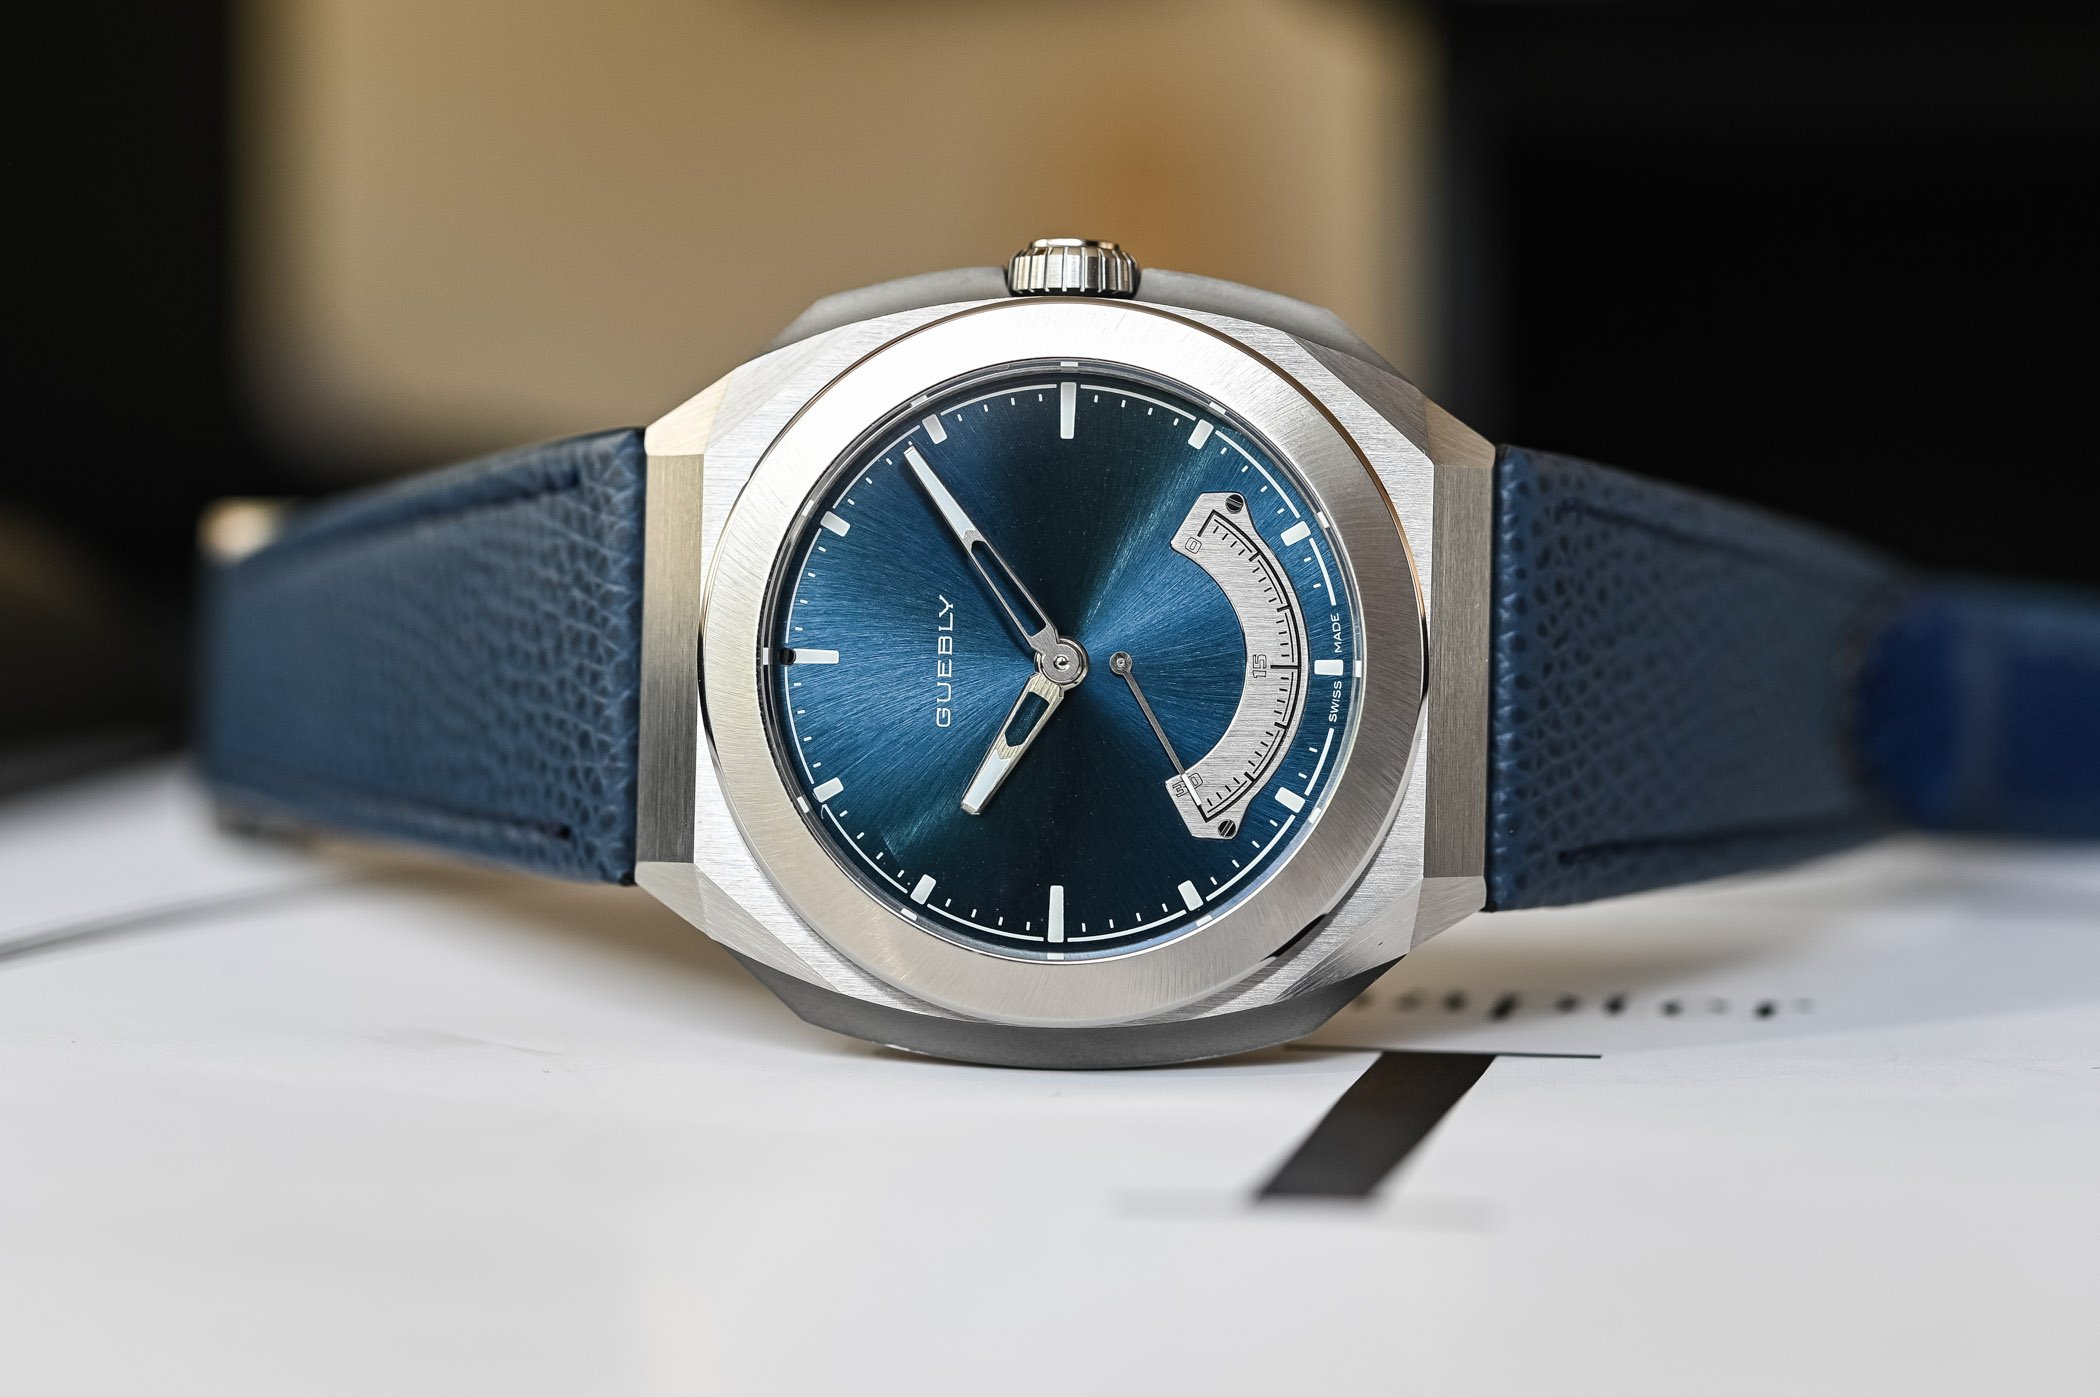 Новый инди-часовой бренд Guebly выпускает часы Chapitre 1